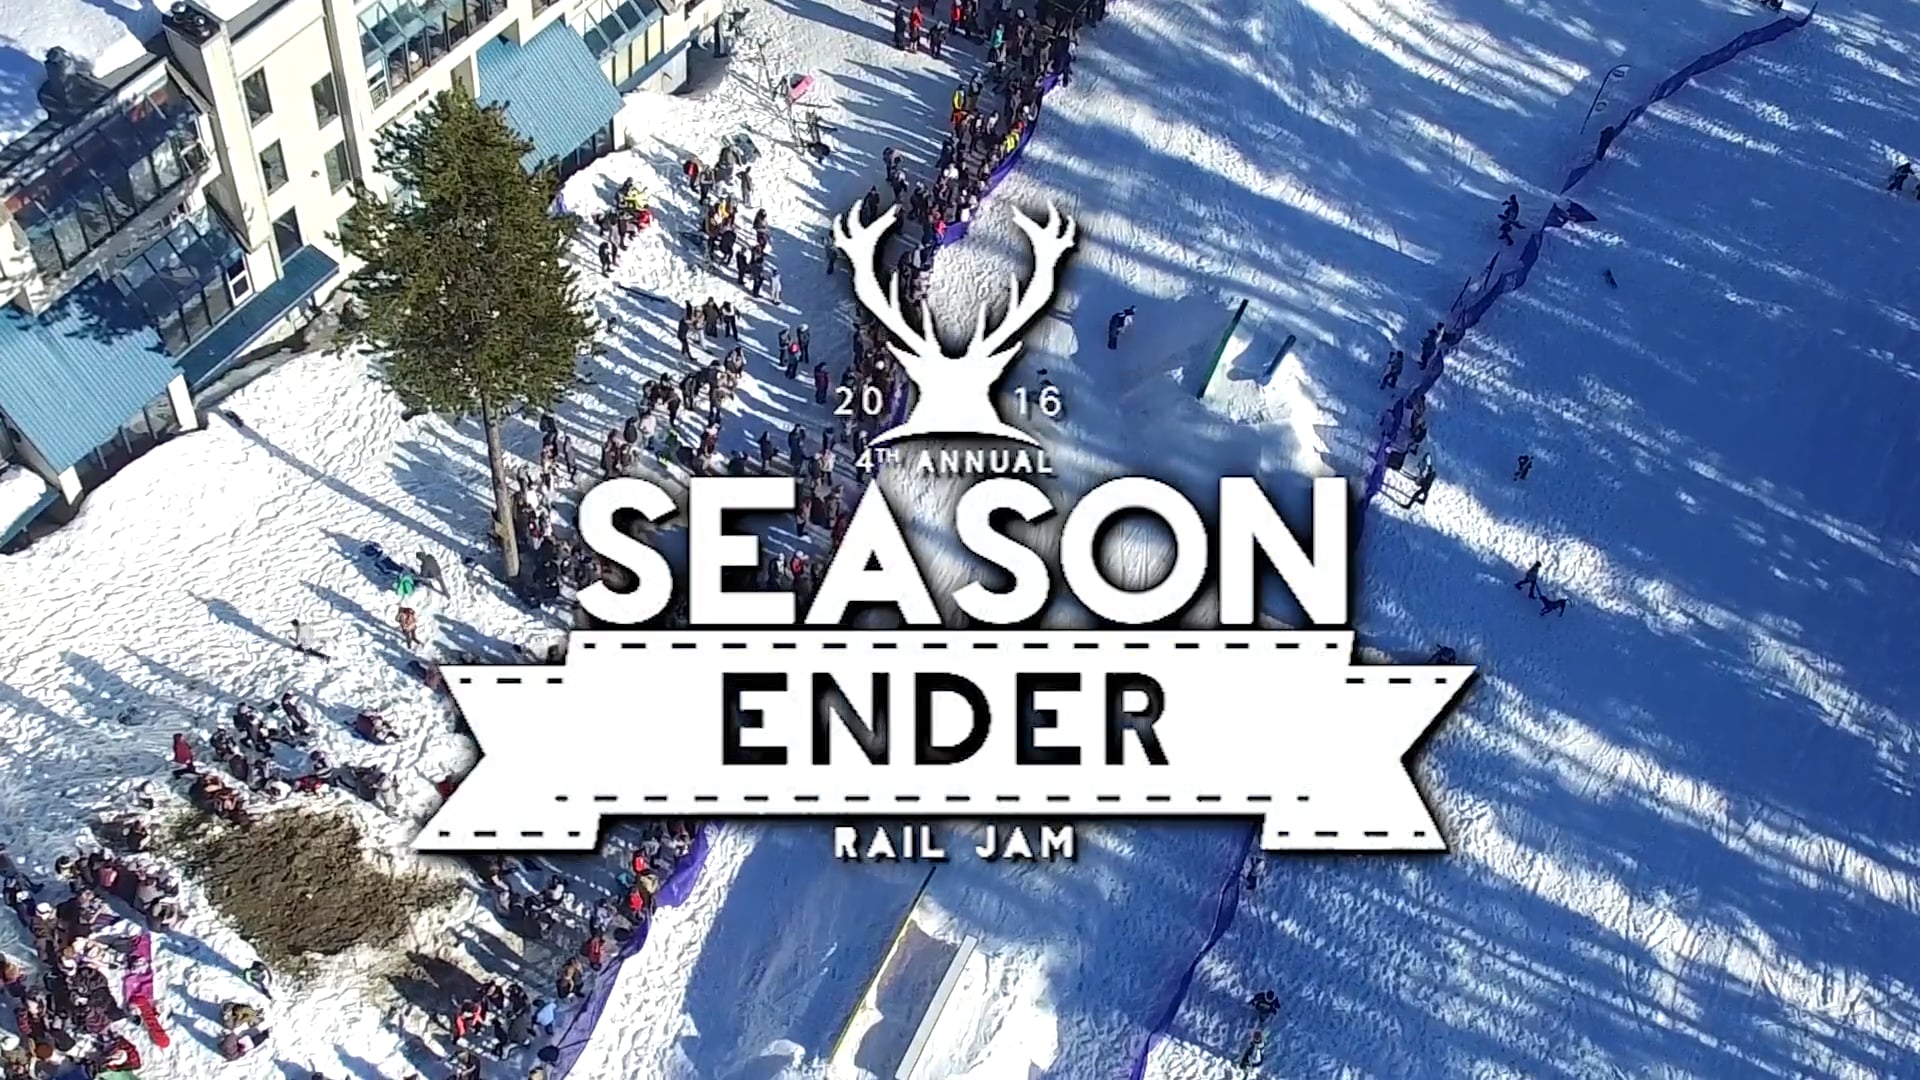 4th Annual Season Ender Rail Jam